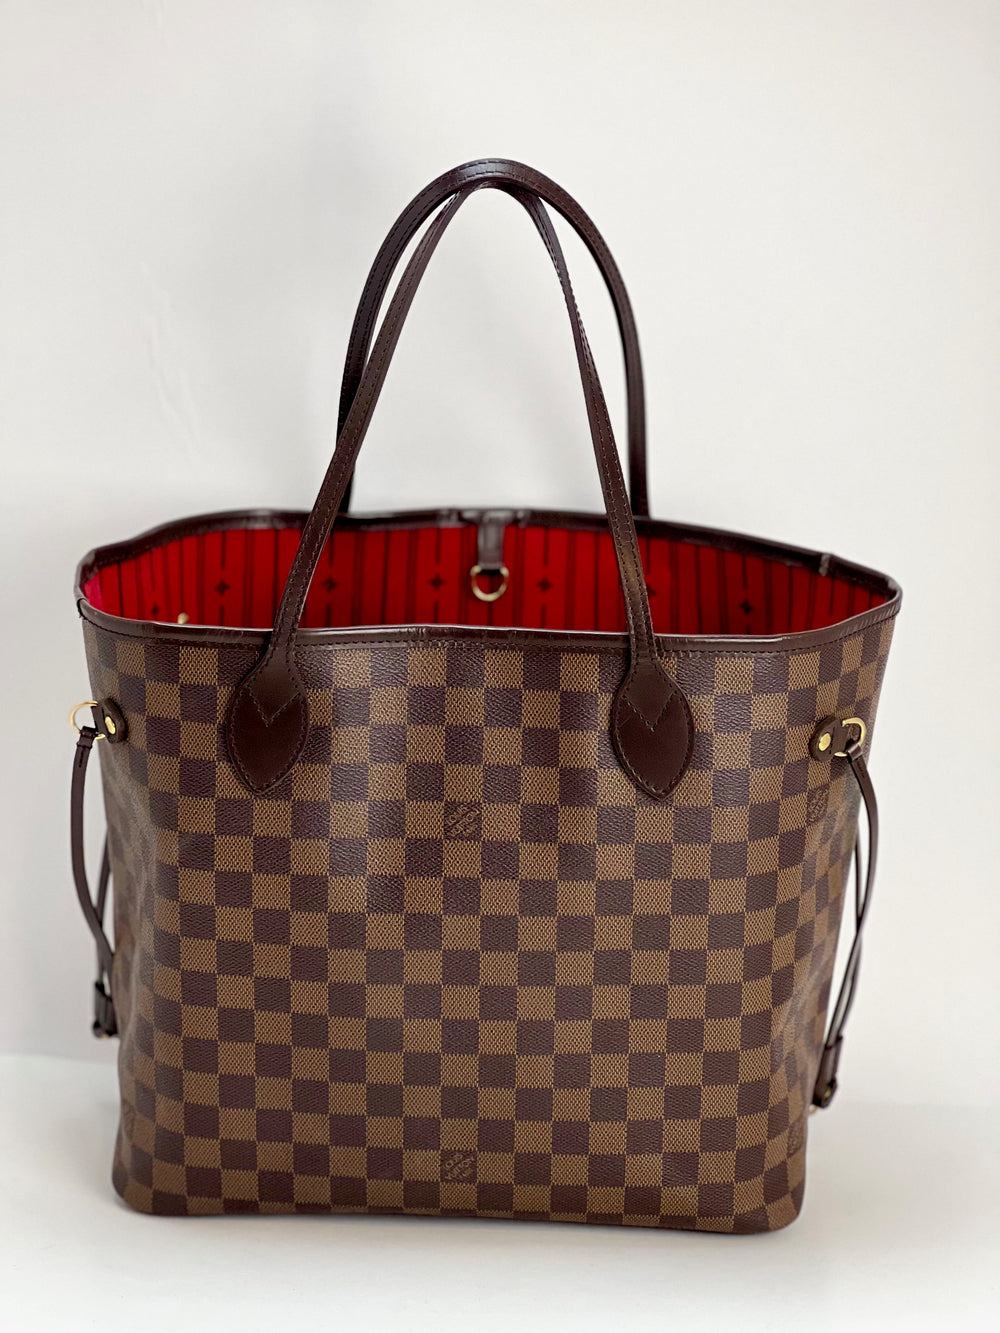 Louis Vuitton Neverfull Large Model Shopping Bag in Ebene Damier